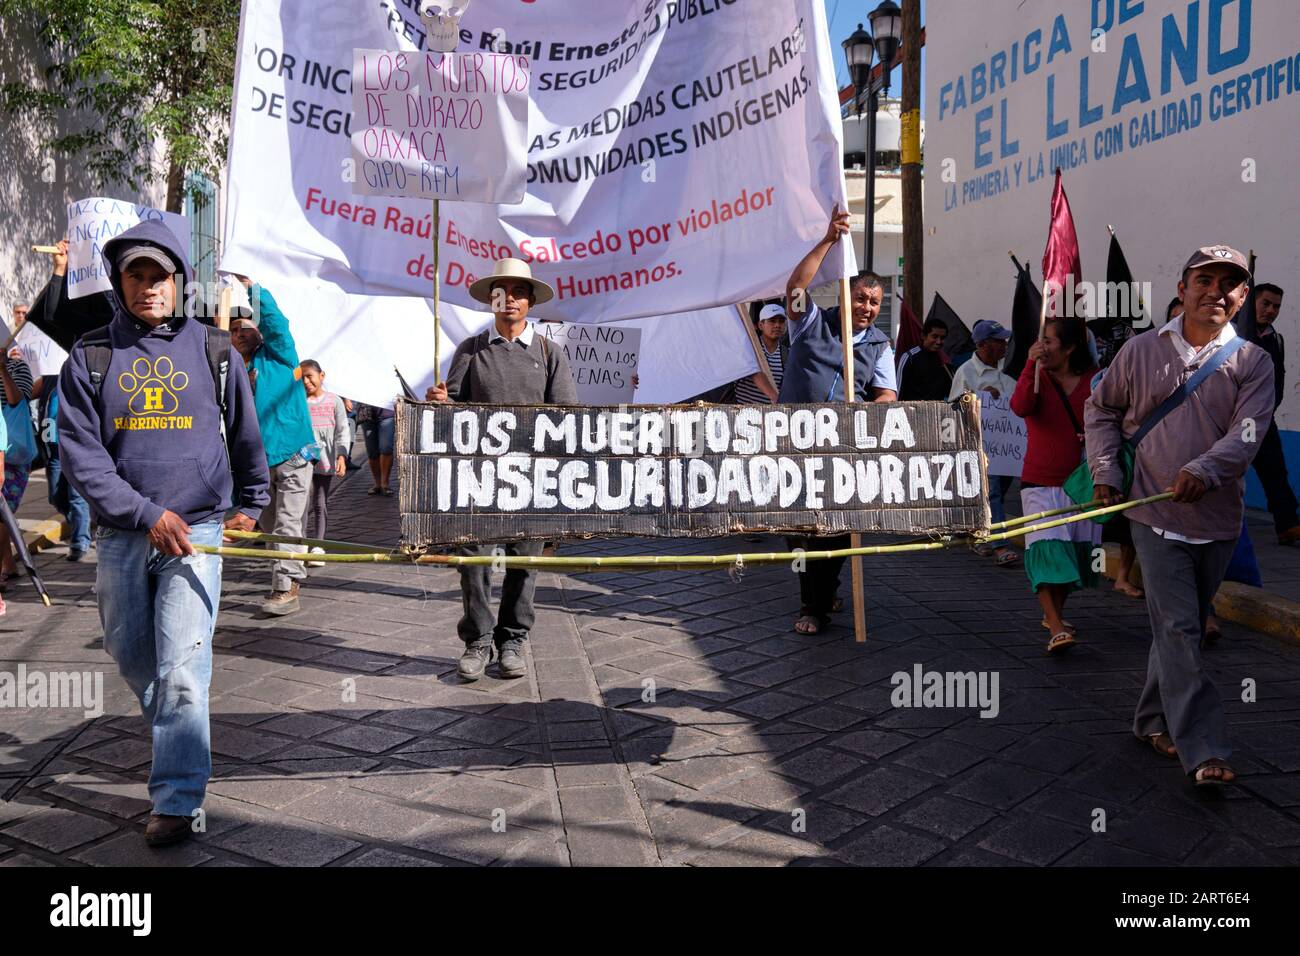 Oaxaca De Juarez, Messico. 29th gennaio 2020. I gruppi indigeni, tra cui il CIPO, "Consejo Indígena Popular de Oaxaca", prendono la strada per chiedere giustizia per oltre 40 omicidi di membri dell'organizzazione e per chiedere risposte alle richieste sociali sulla sicurezza. Hanno criticato direttamente il capo del Segretariato della sicurezza, Raúl Ernesto Salcedo Rosales, e hanno chiesto le sue dimissioni. Hanno sostenuto che, sotto l'attuale amministrazione, vi sono stati più di 3000 omicidi, senza poter affrontare la questione della violenza e della mancanza di sicurezza nello Stato. Foto Stock